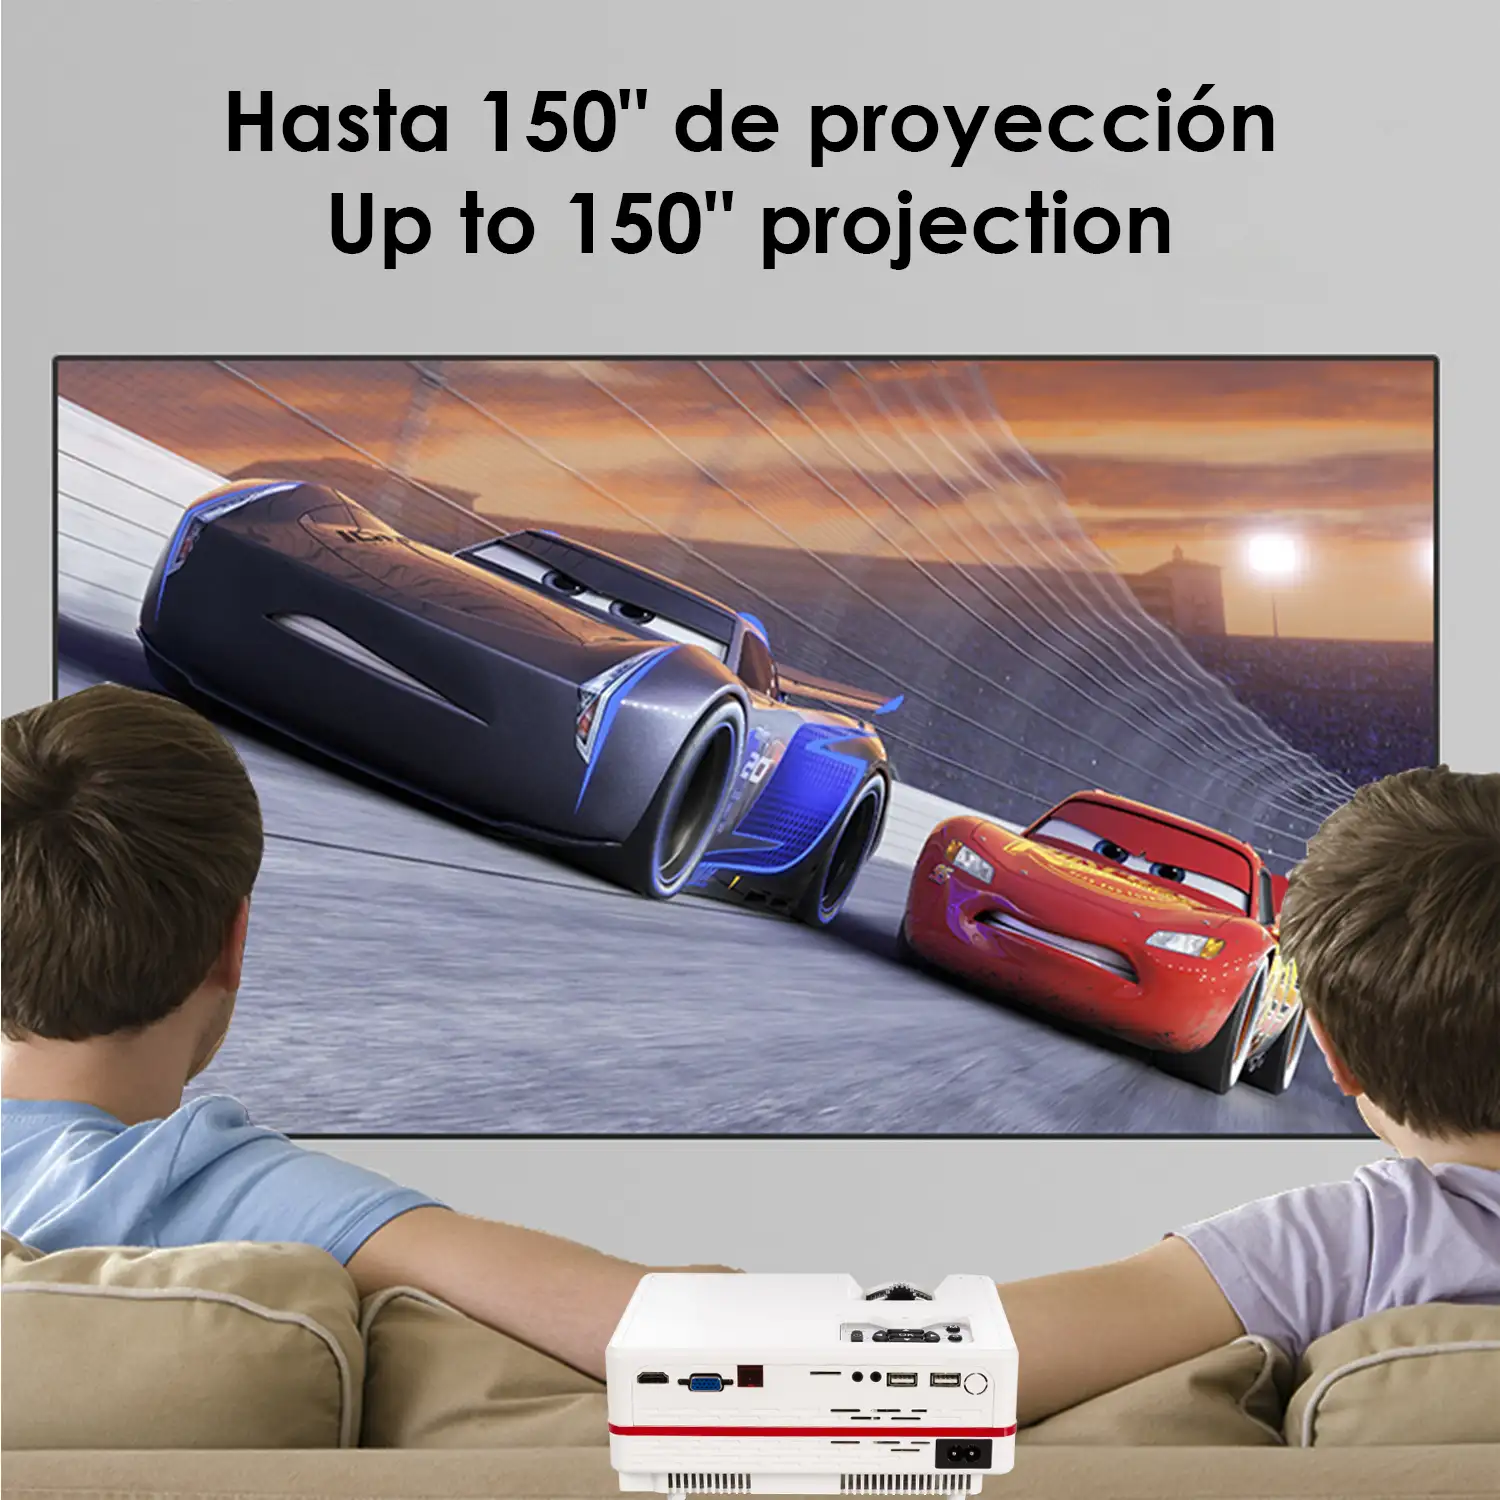 Video proyector LED hasta 150 pulgadas, contraste 3000:1. Conexiones HDMI, USB, incluye entrada de antena. Mando a distancia.